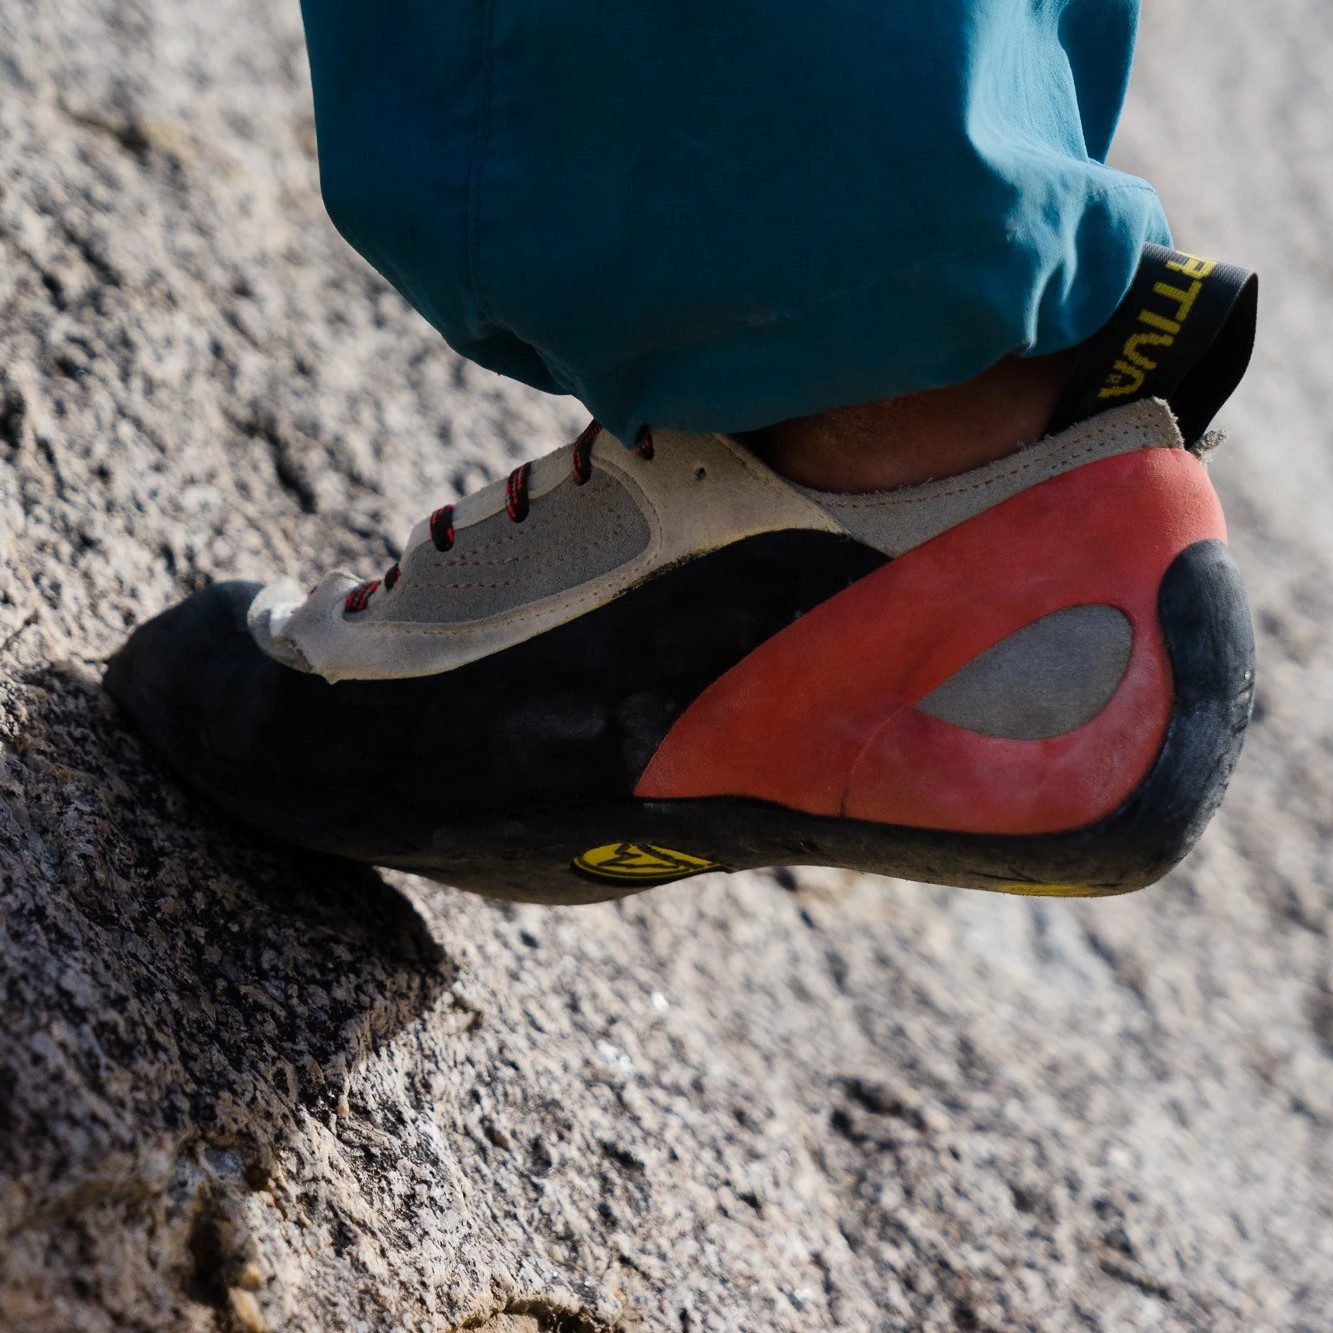 La Sportiva Finale Women's Rock Climbing Shoes